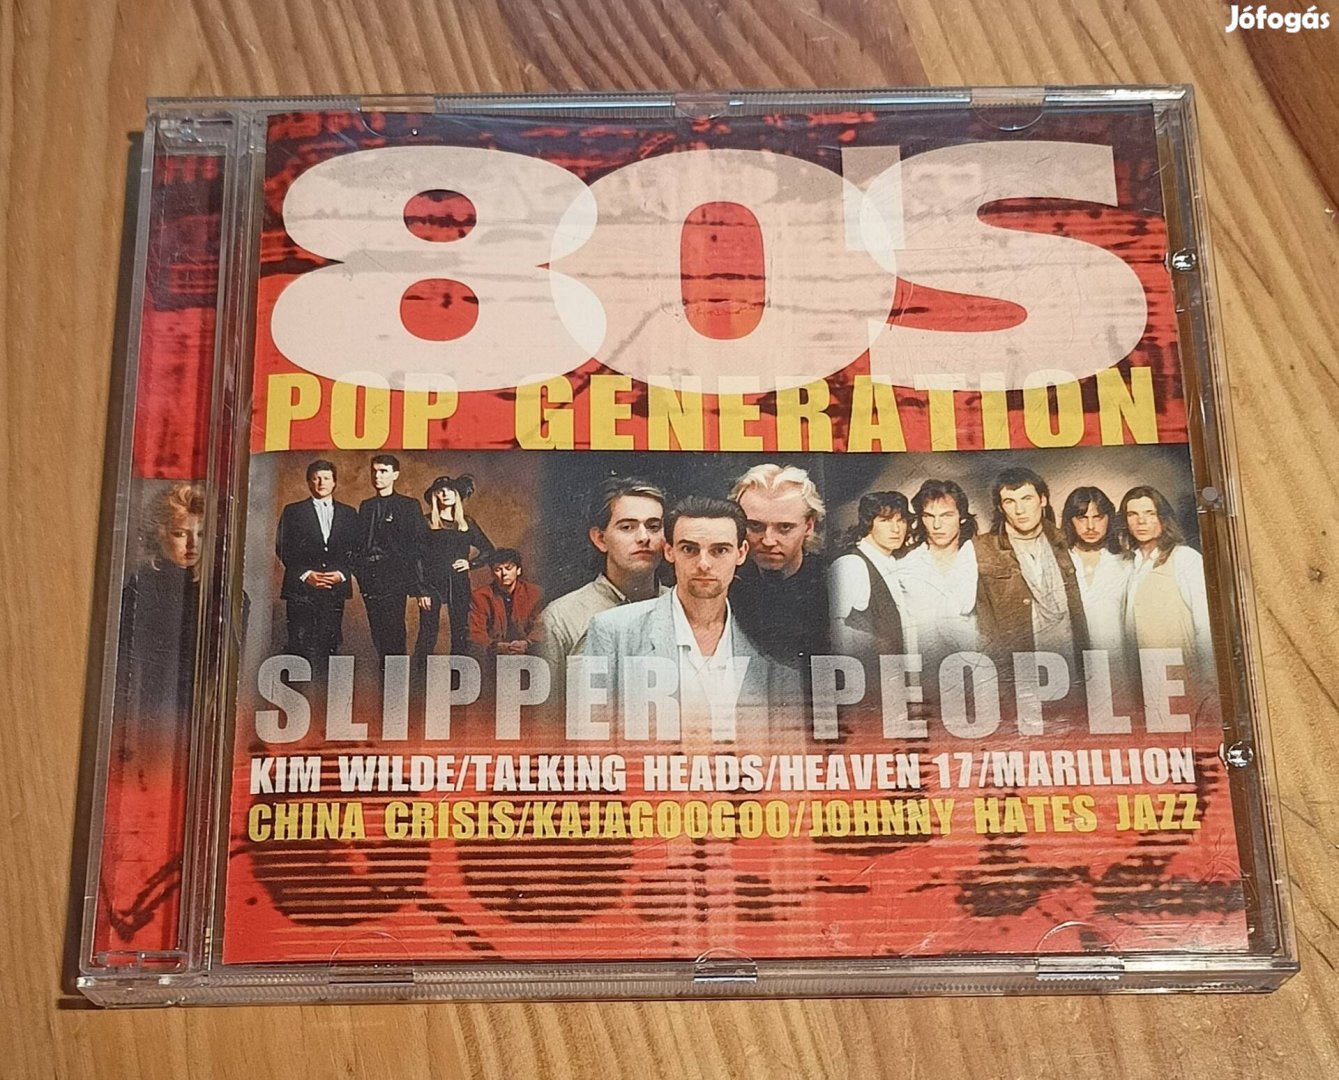 80's Pop Generation - Slippery People CD